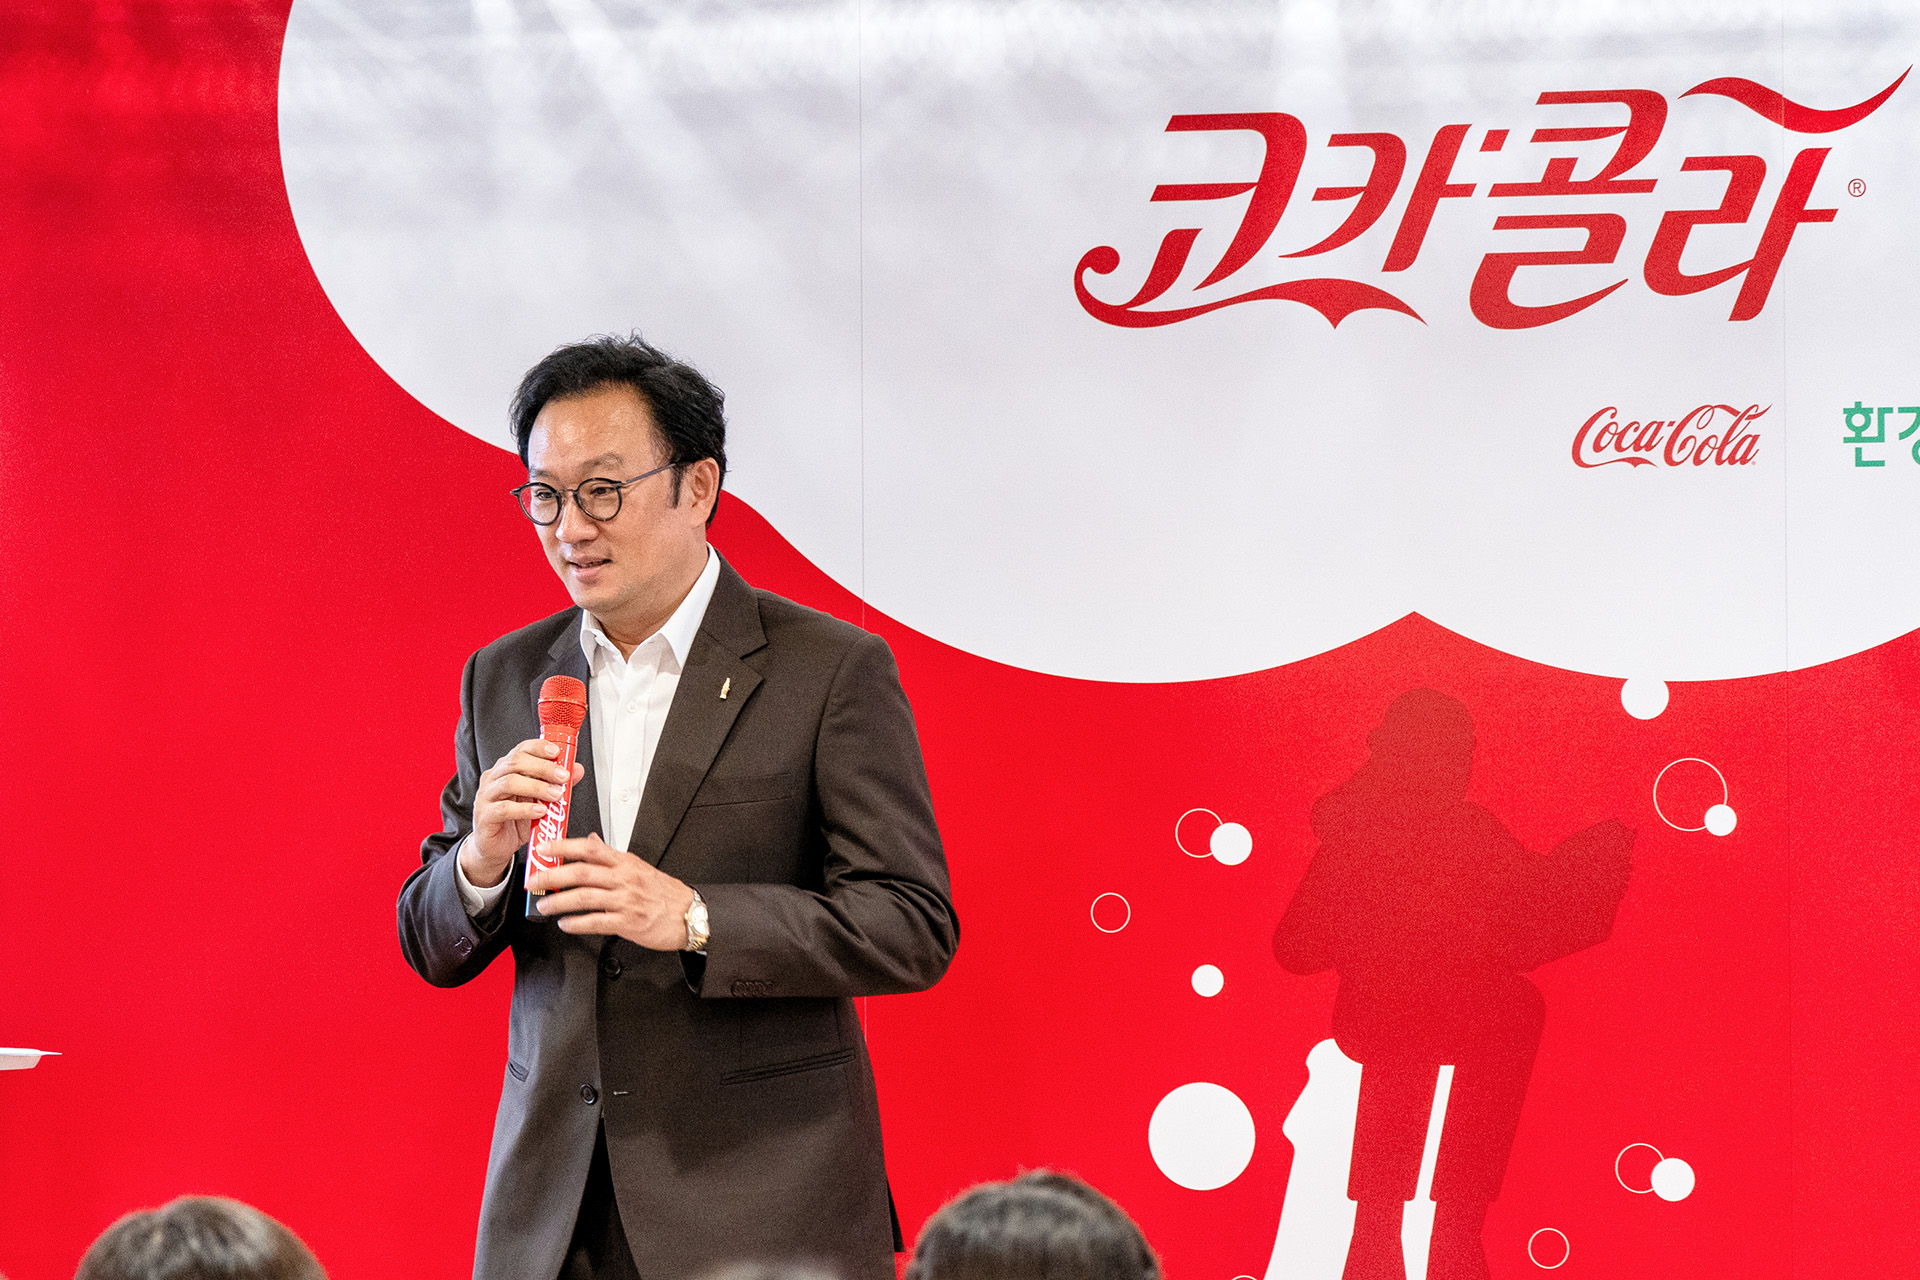 한국 코카콜라 정기성 대표가 코카콜라 로고가 새겨진 빨강색 마이크를 들고 장학생들에게 인삿말을 건네고 있다